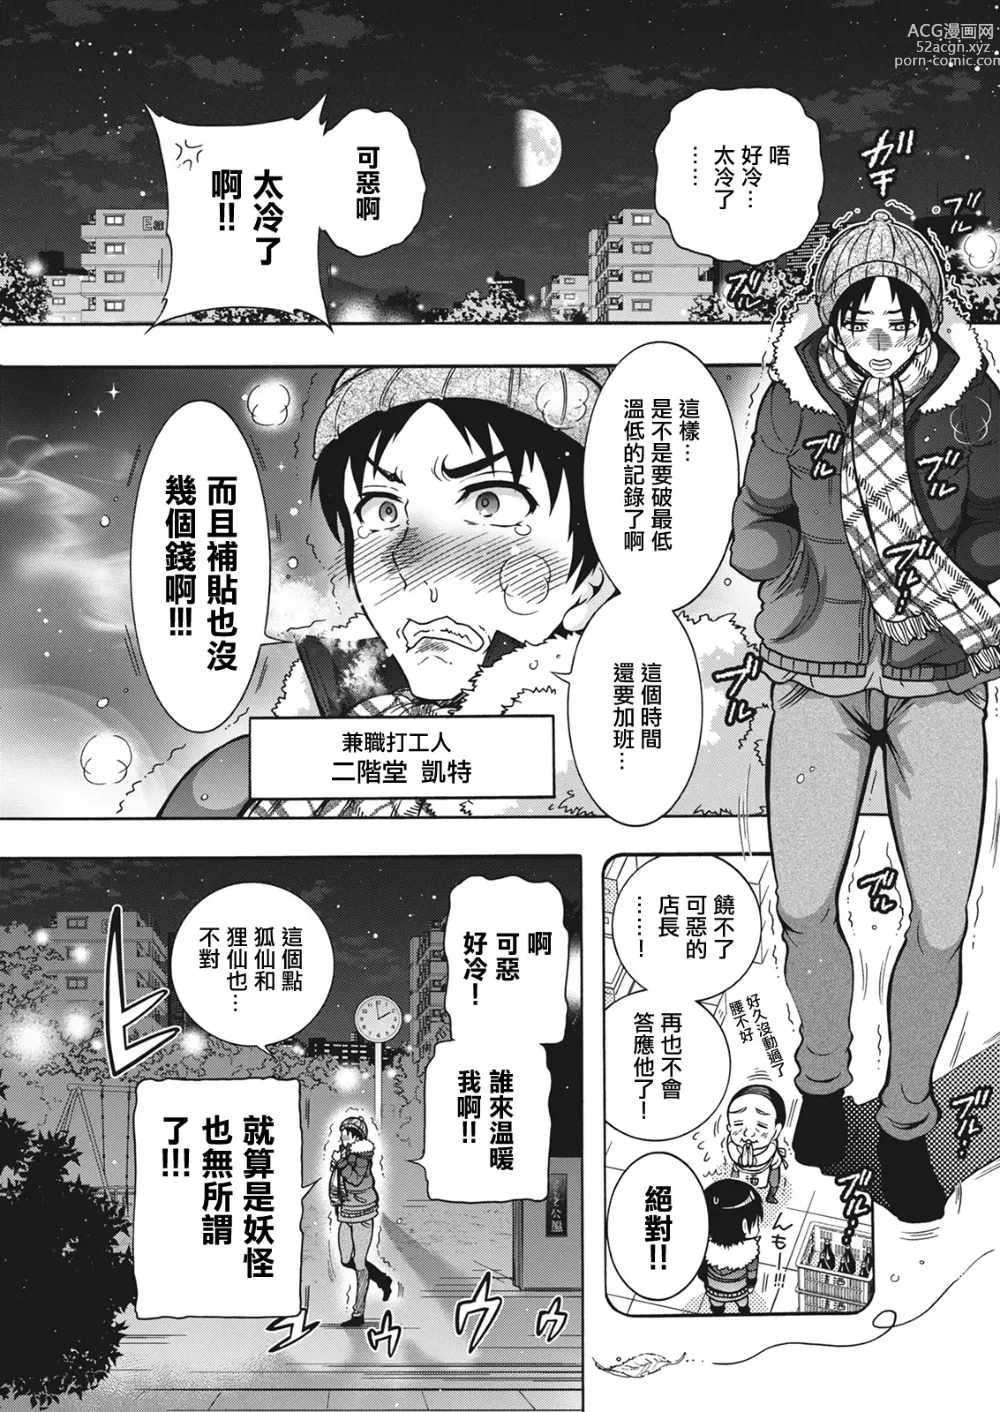 Page 1 of manga 妖怪HHH